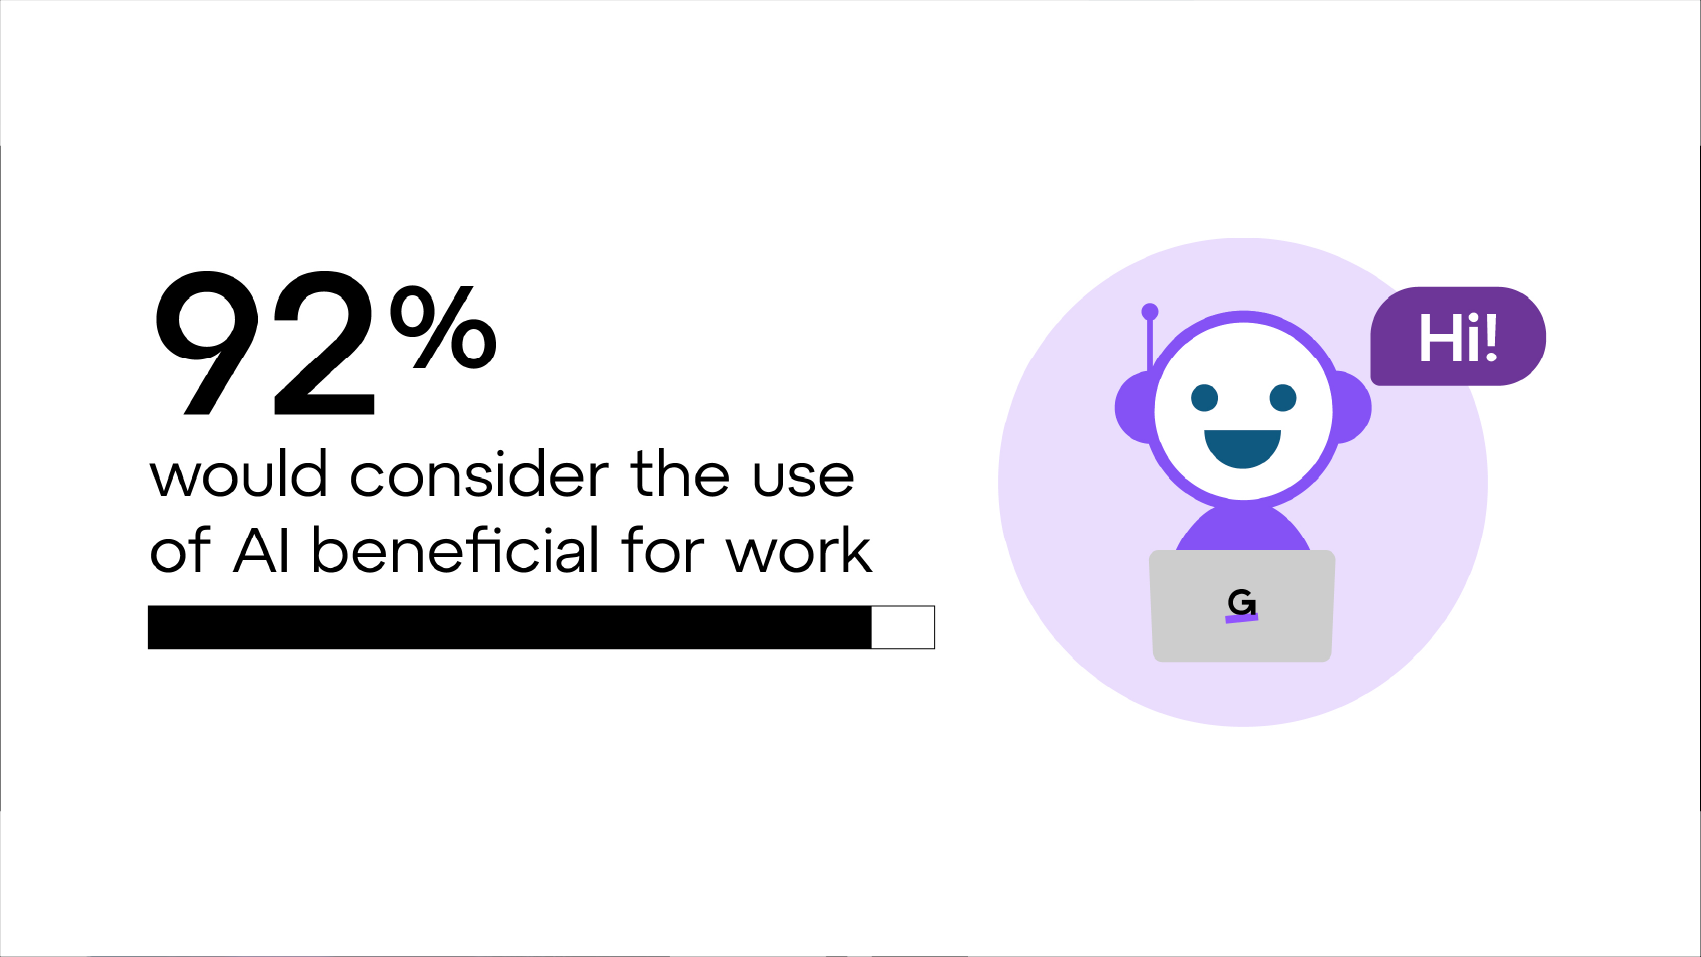 92% consideram benéfico o uso de IA no trabalho.